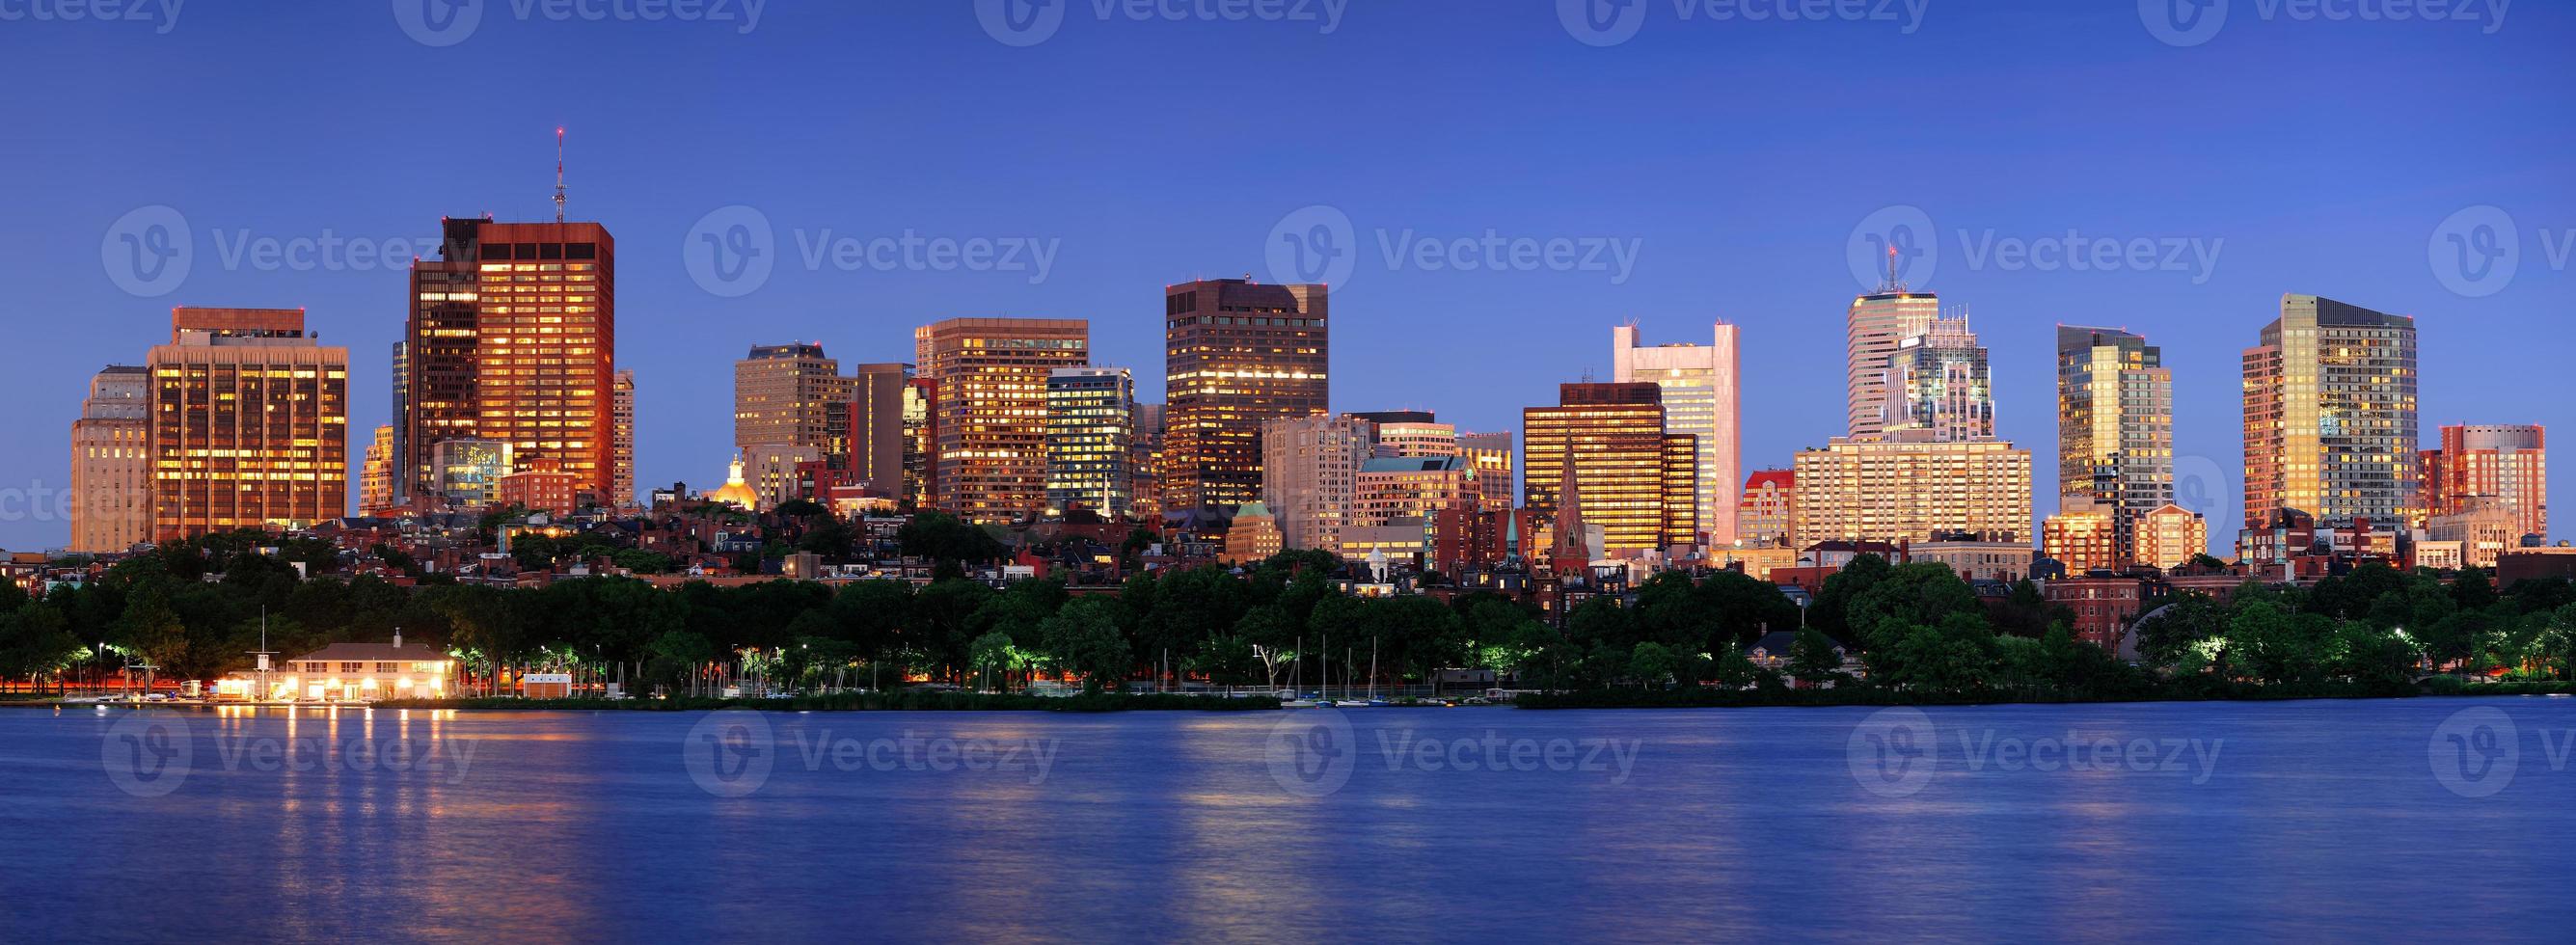 panorama da cena noturna de boston foto